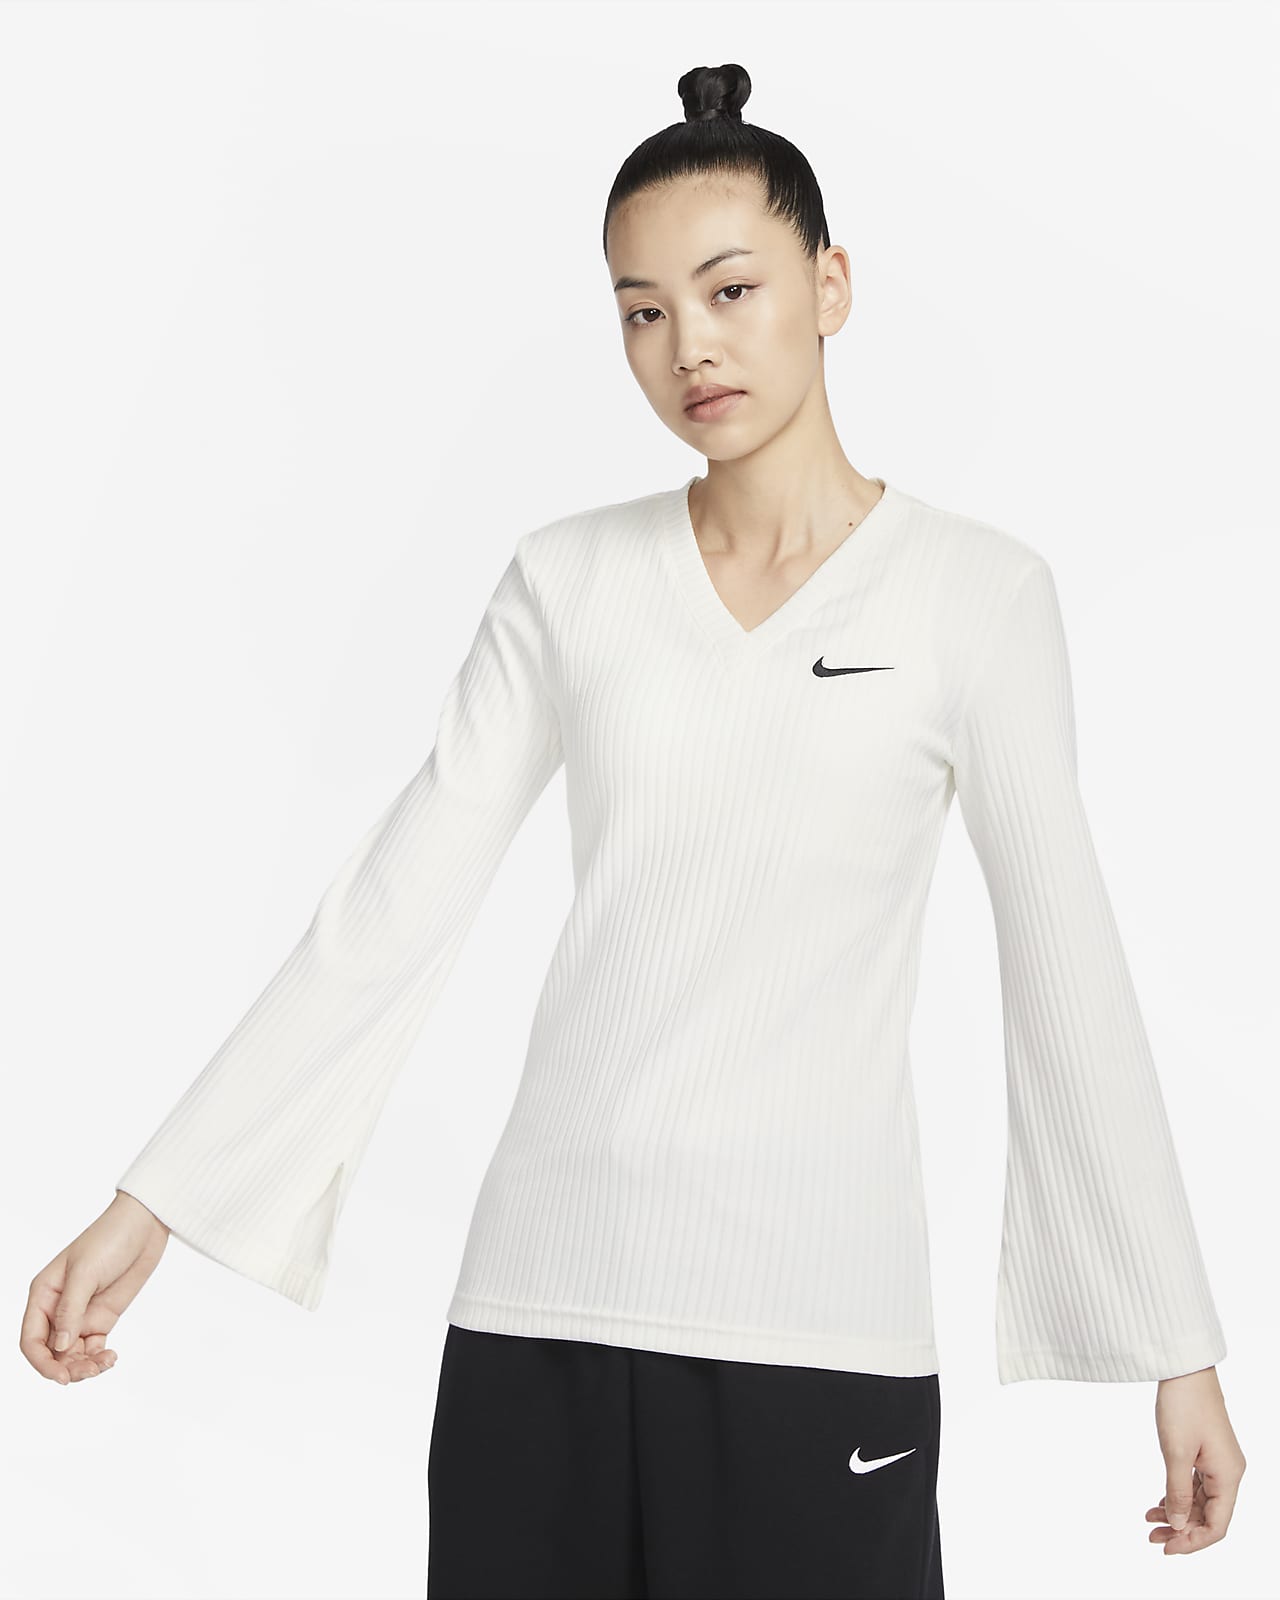 Nike Sportswear Women's Ribbed Jersey Long-Sleeve V-Neck Top. Nike